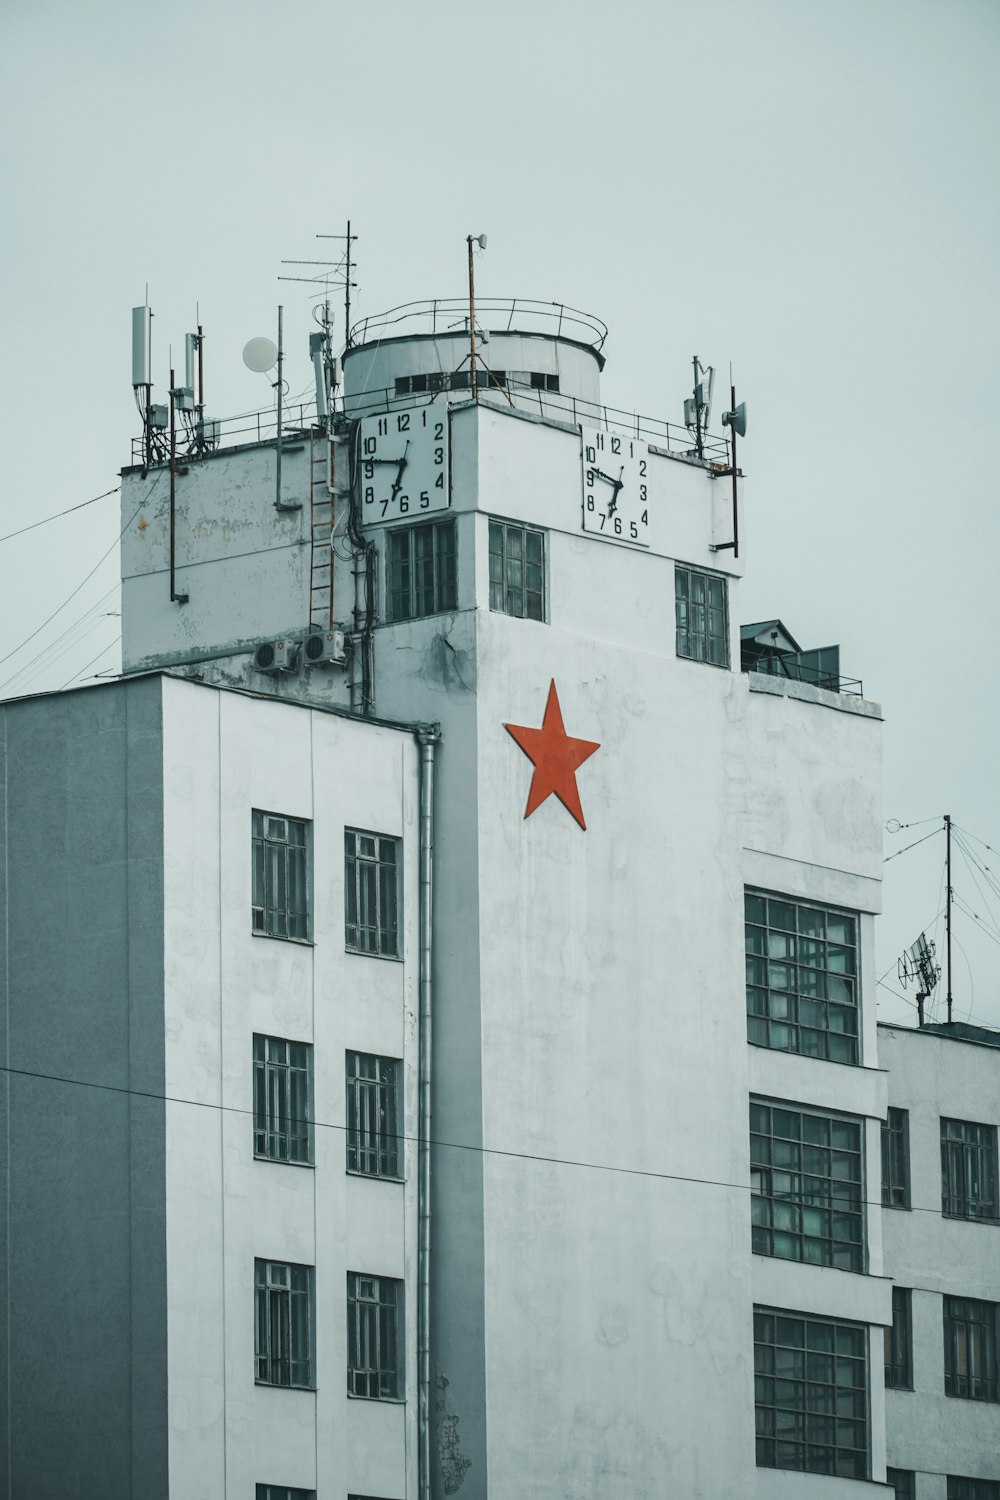 Edificio de hormigón blanco con bandera de estrella roja